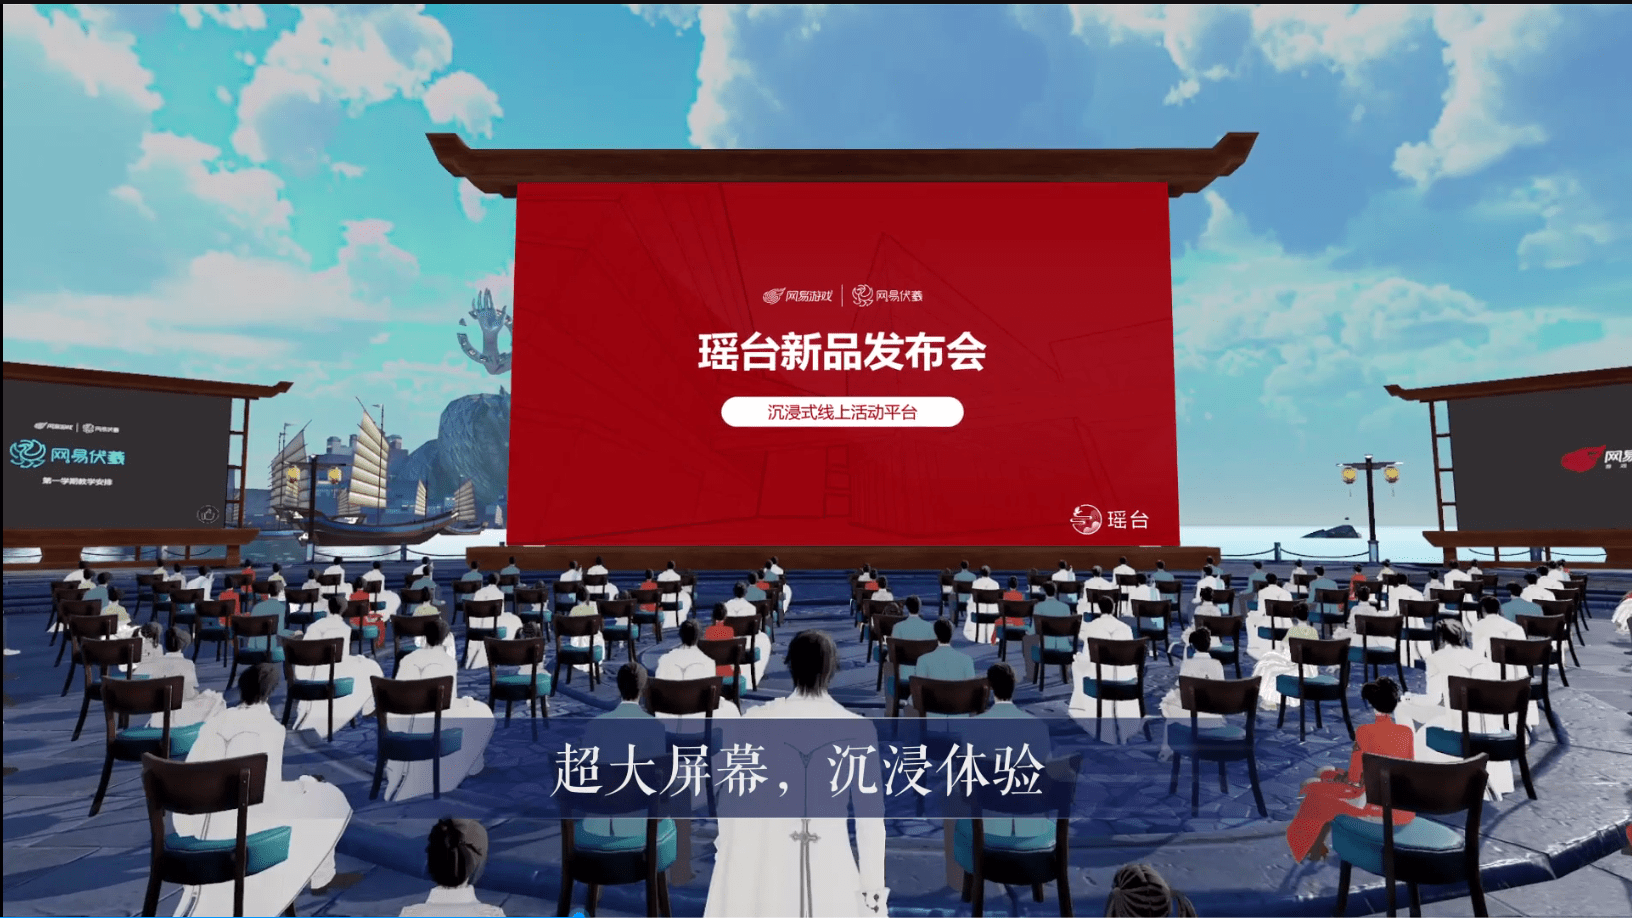 图片展示了一个虚拟现实场景，观众坐在椅子上，面向一个巨大的屏幕，屏幕上有中文文字和图案，背景是天空和建筑。